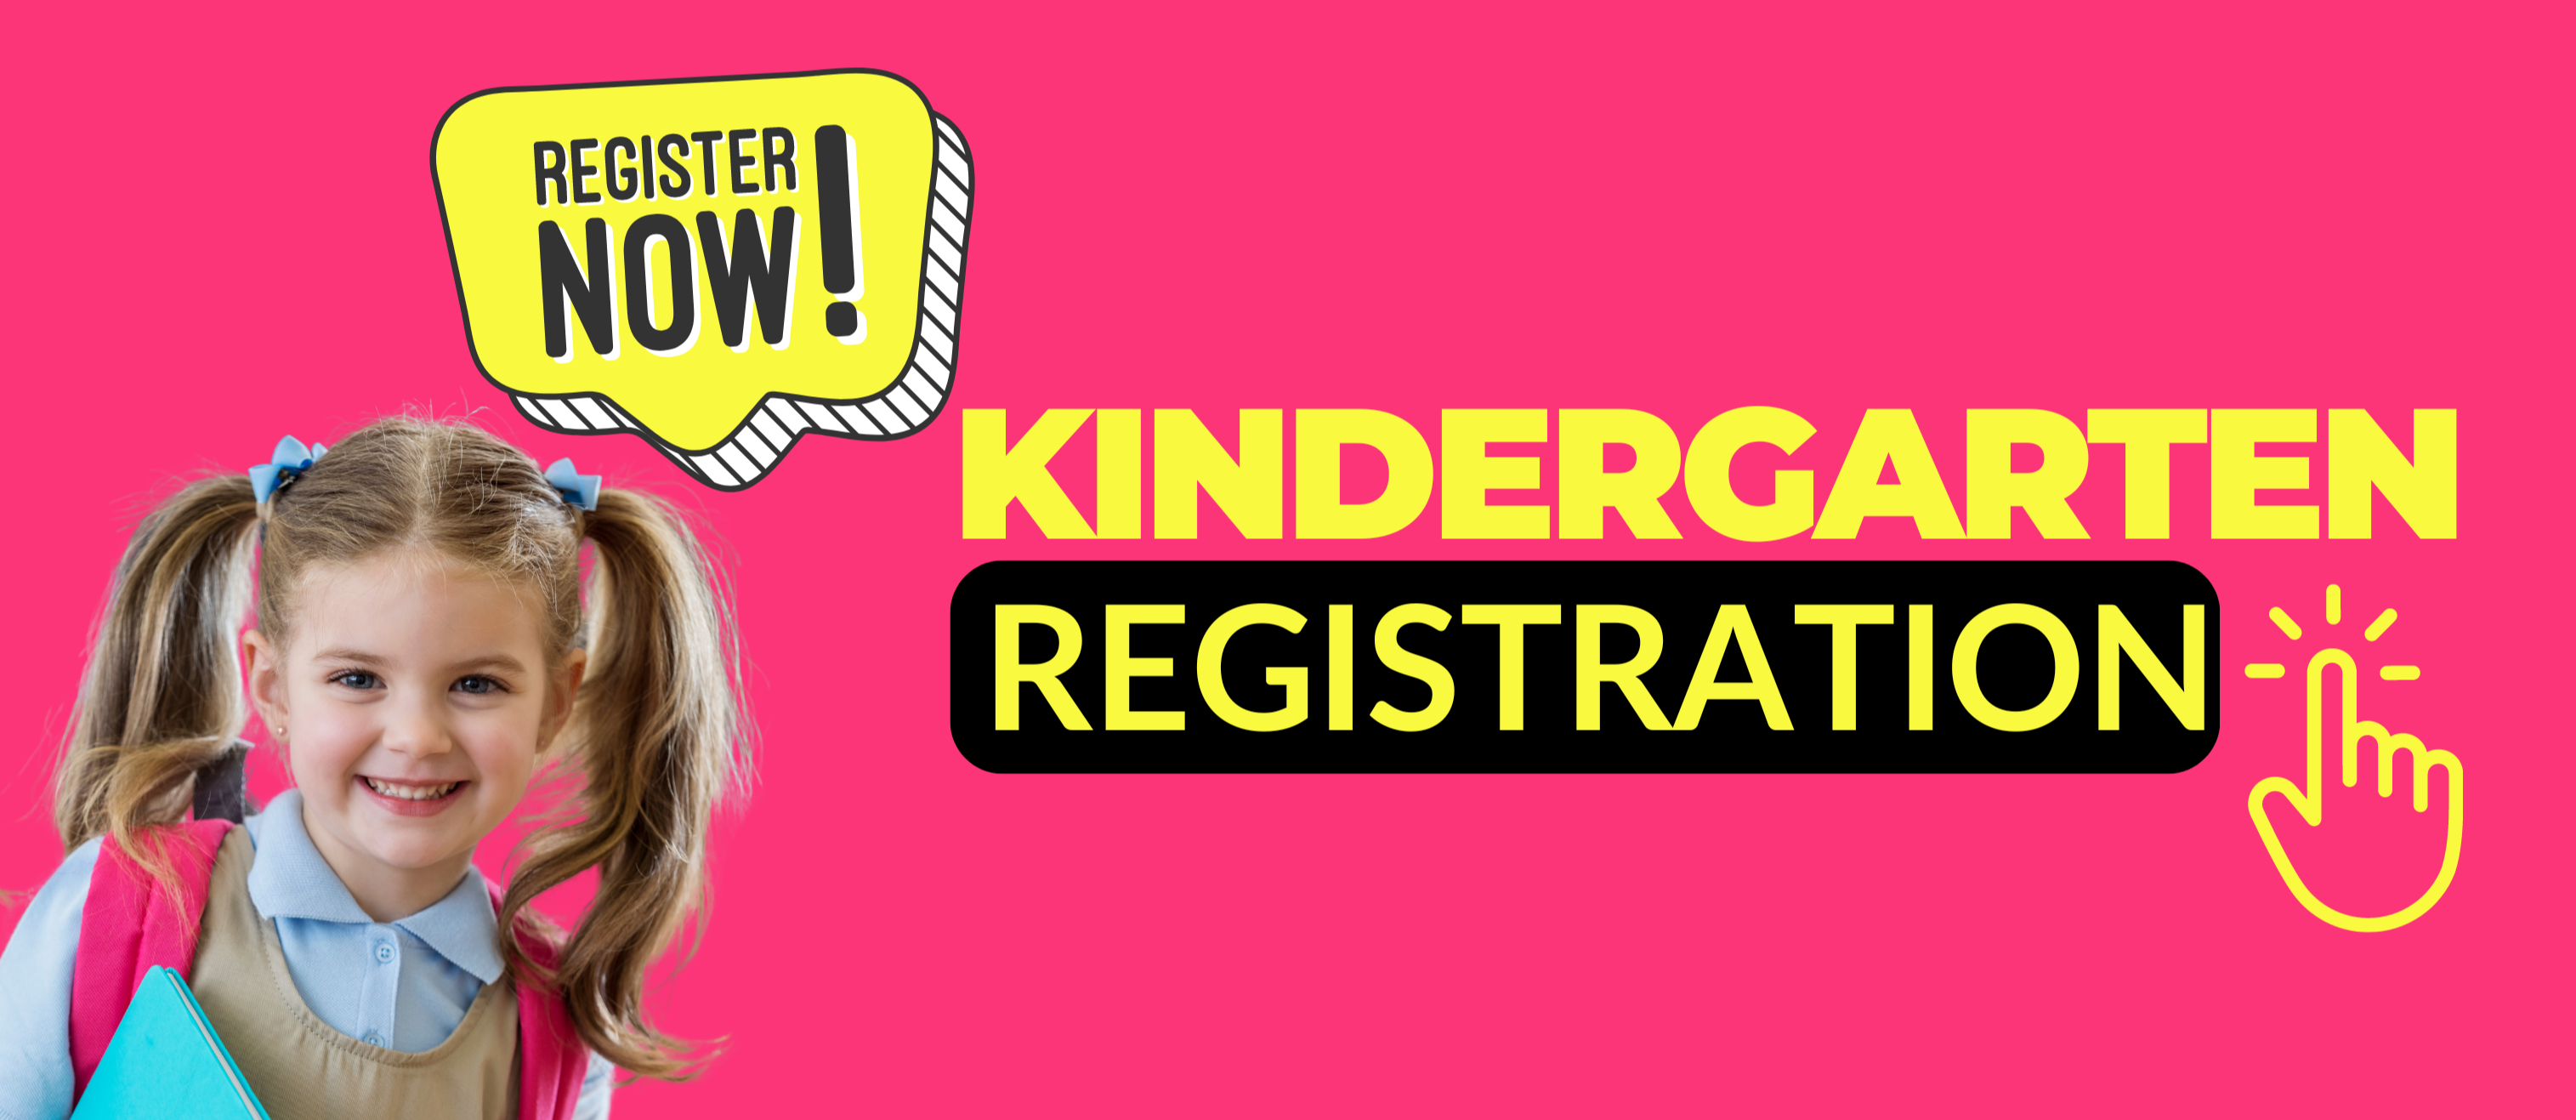 kindergarten registraion